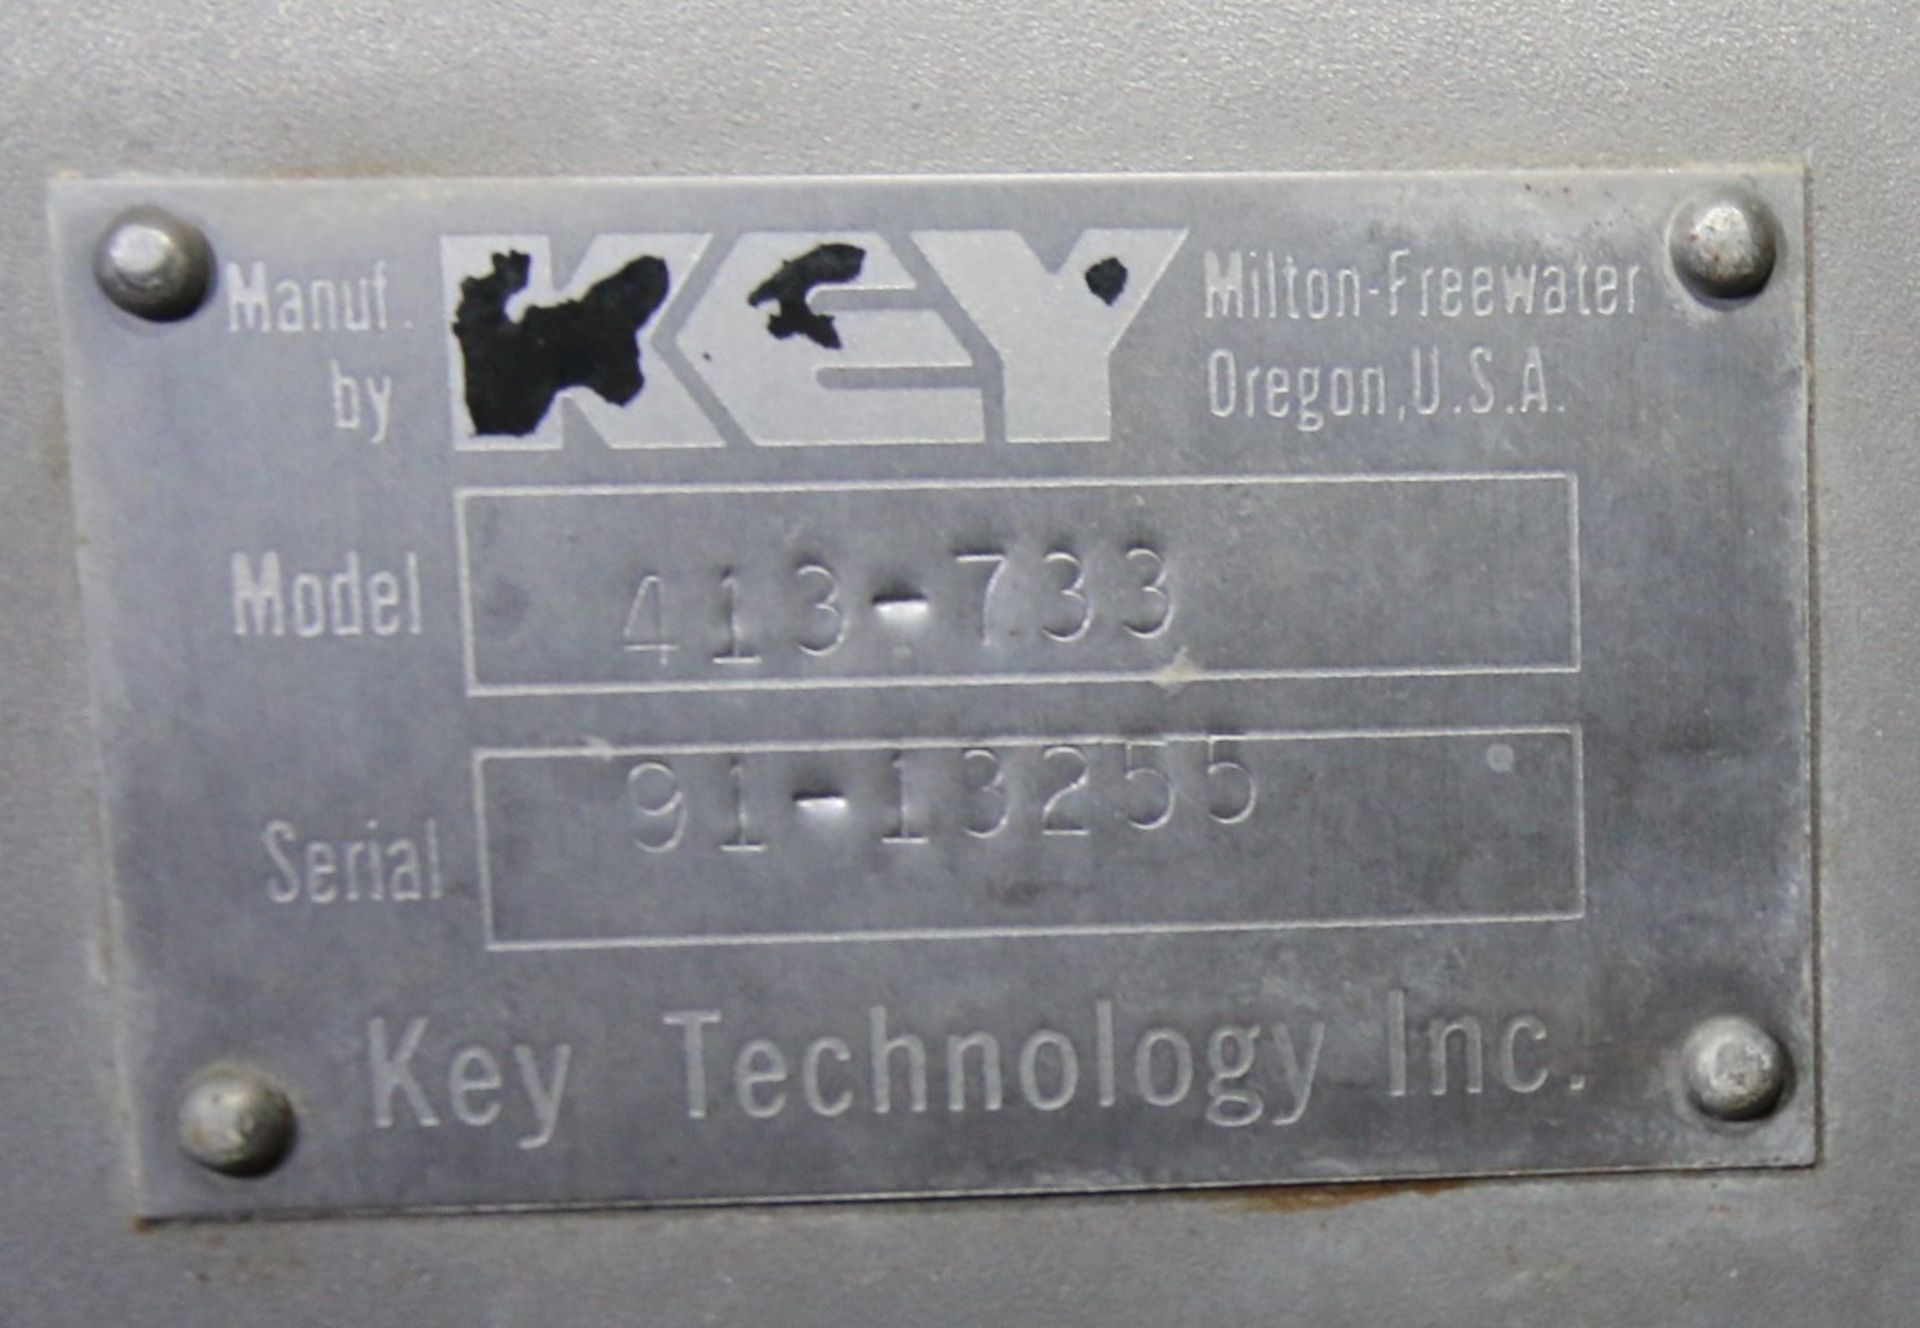 Key ISO - FLO 8 ft L x 24" W x 4" D - 1 - Level S/S Shaker Deck, Model 413-733, SN 91-13255, Mounted - Image 5 of 5